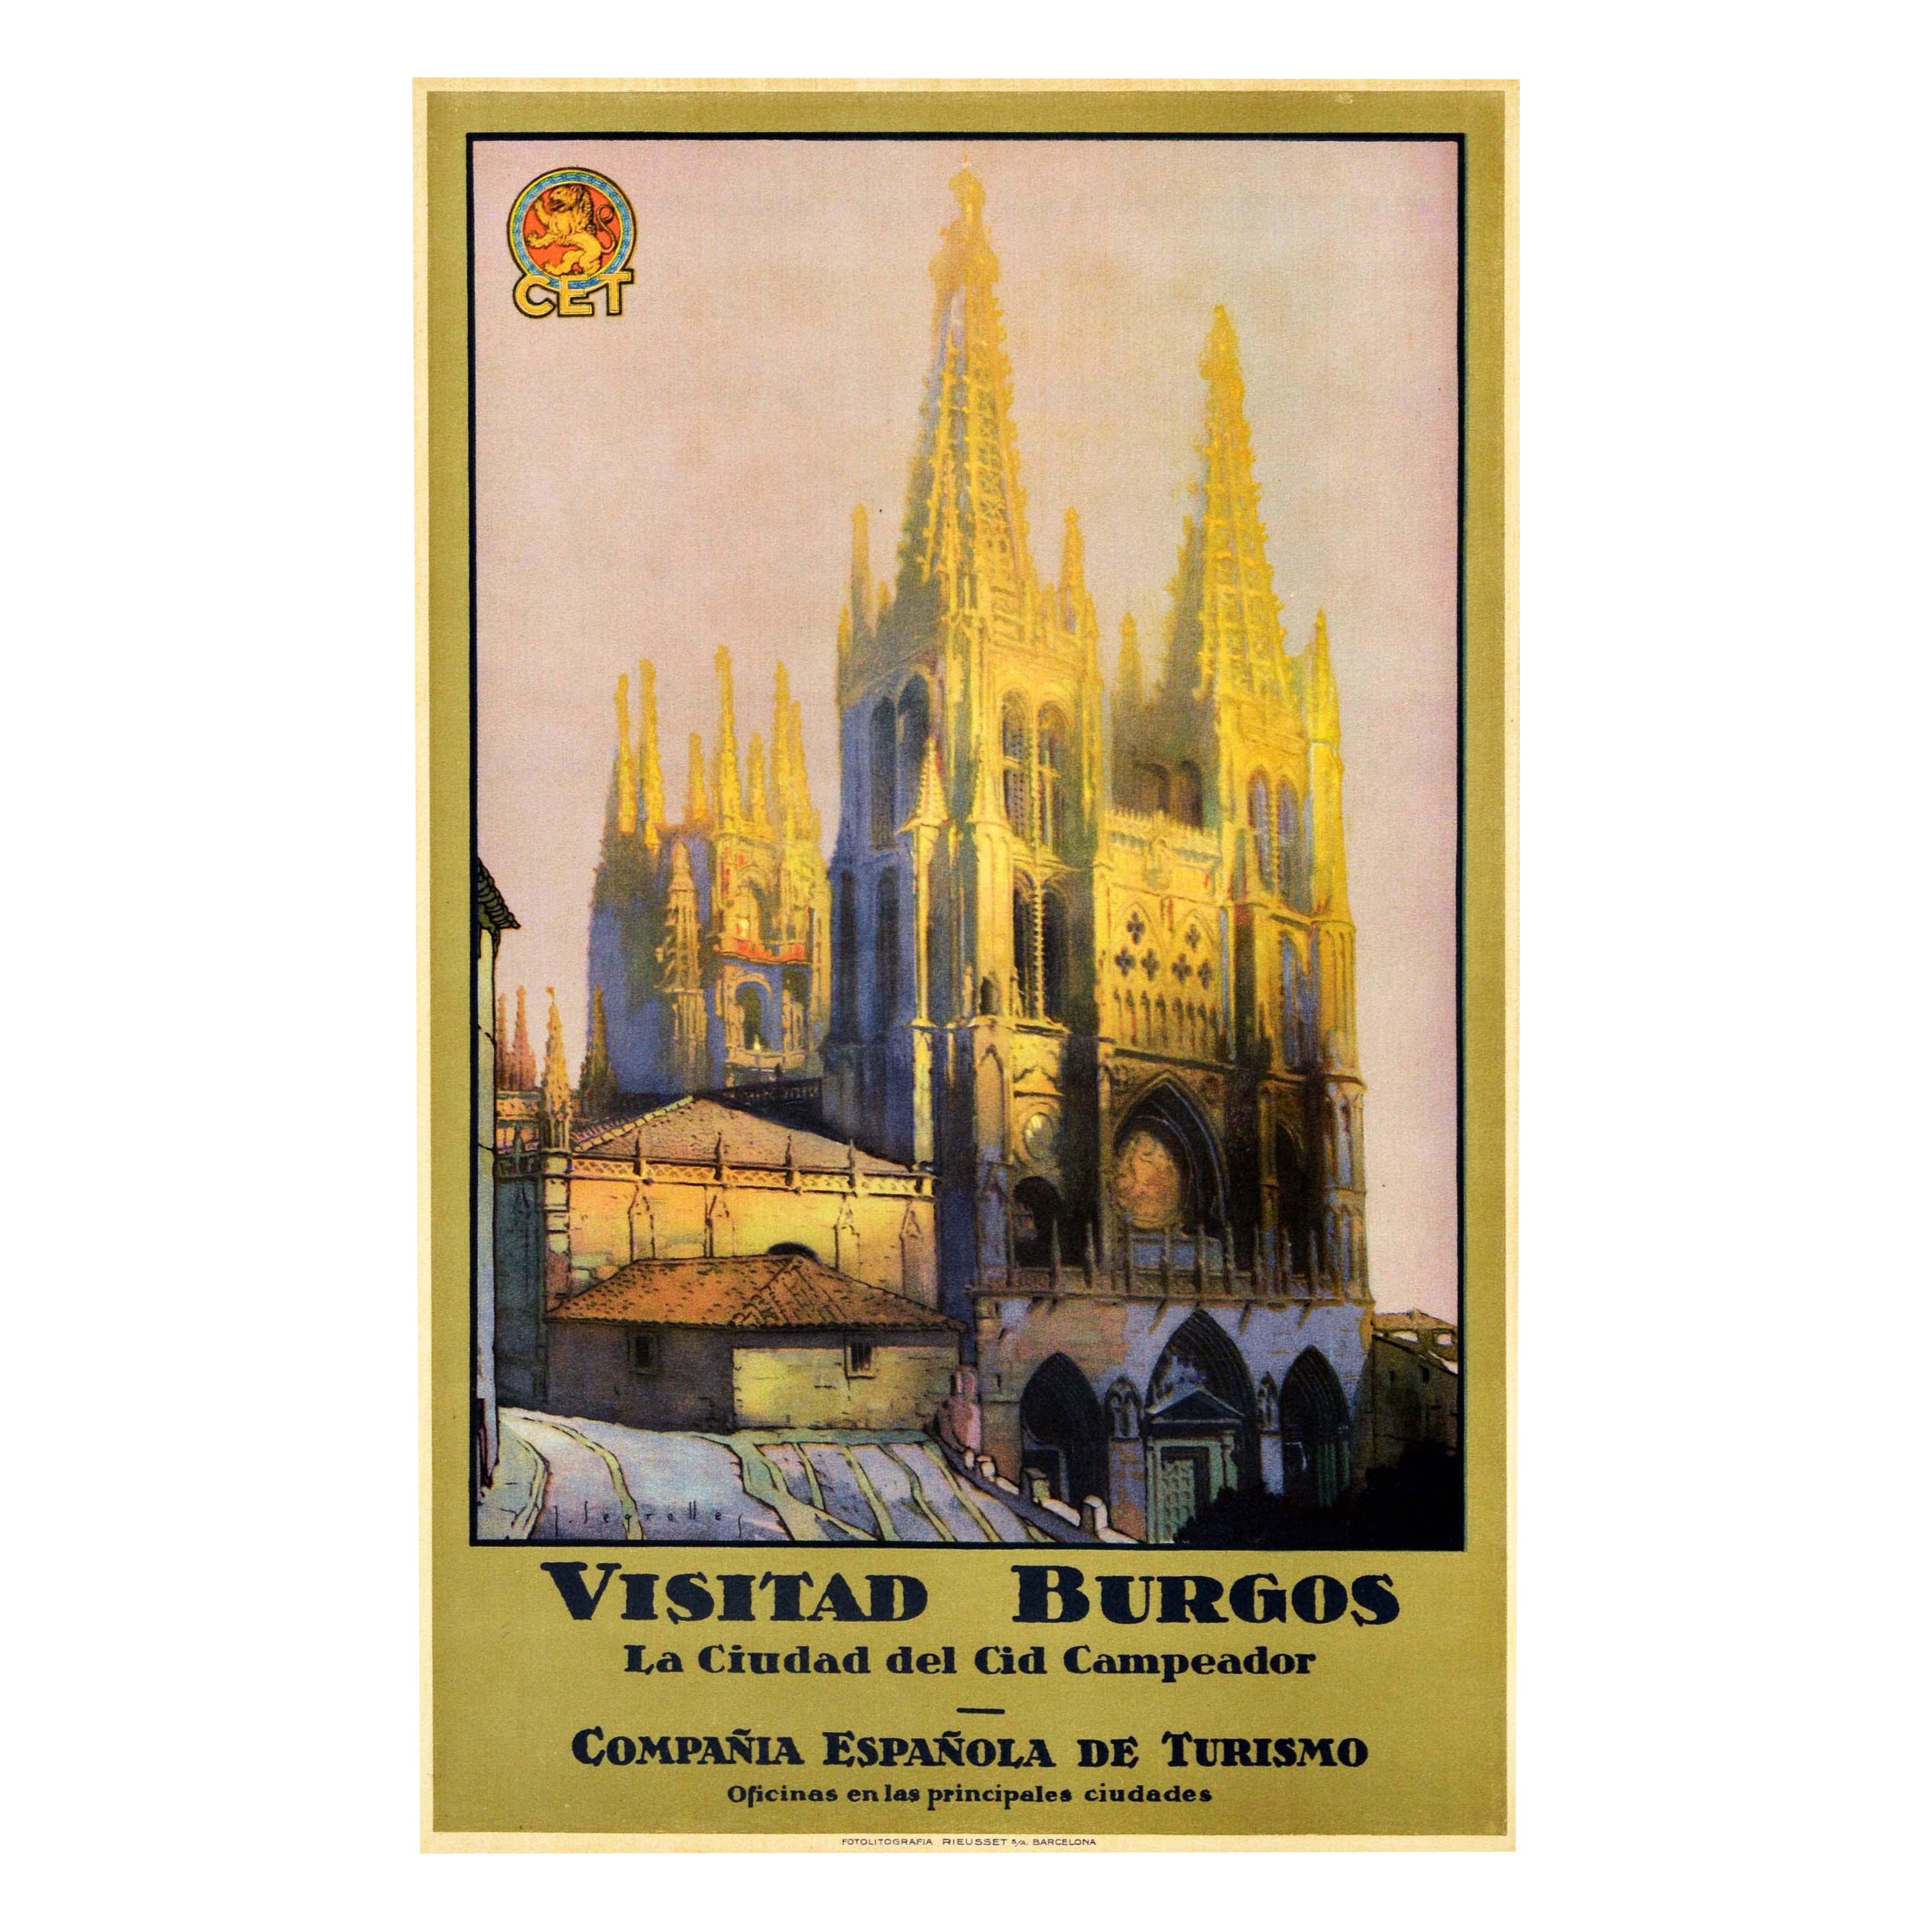 Original Vintage Travel Poster Visitad Burgos Cid Campeador Spain Cathedral City